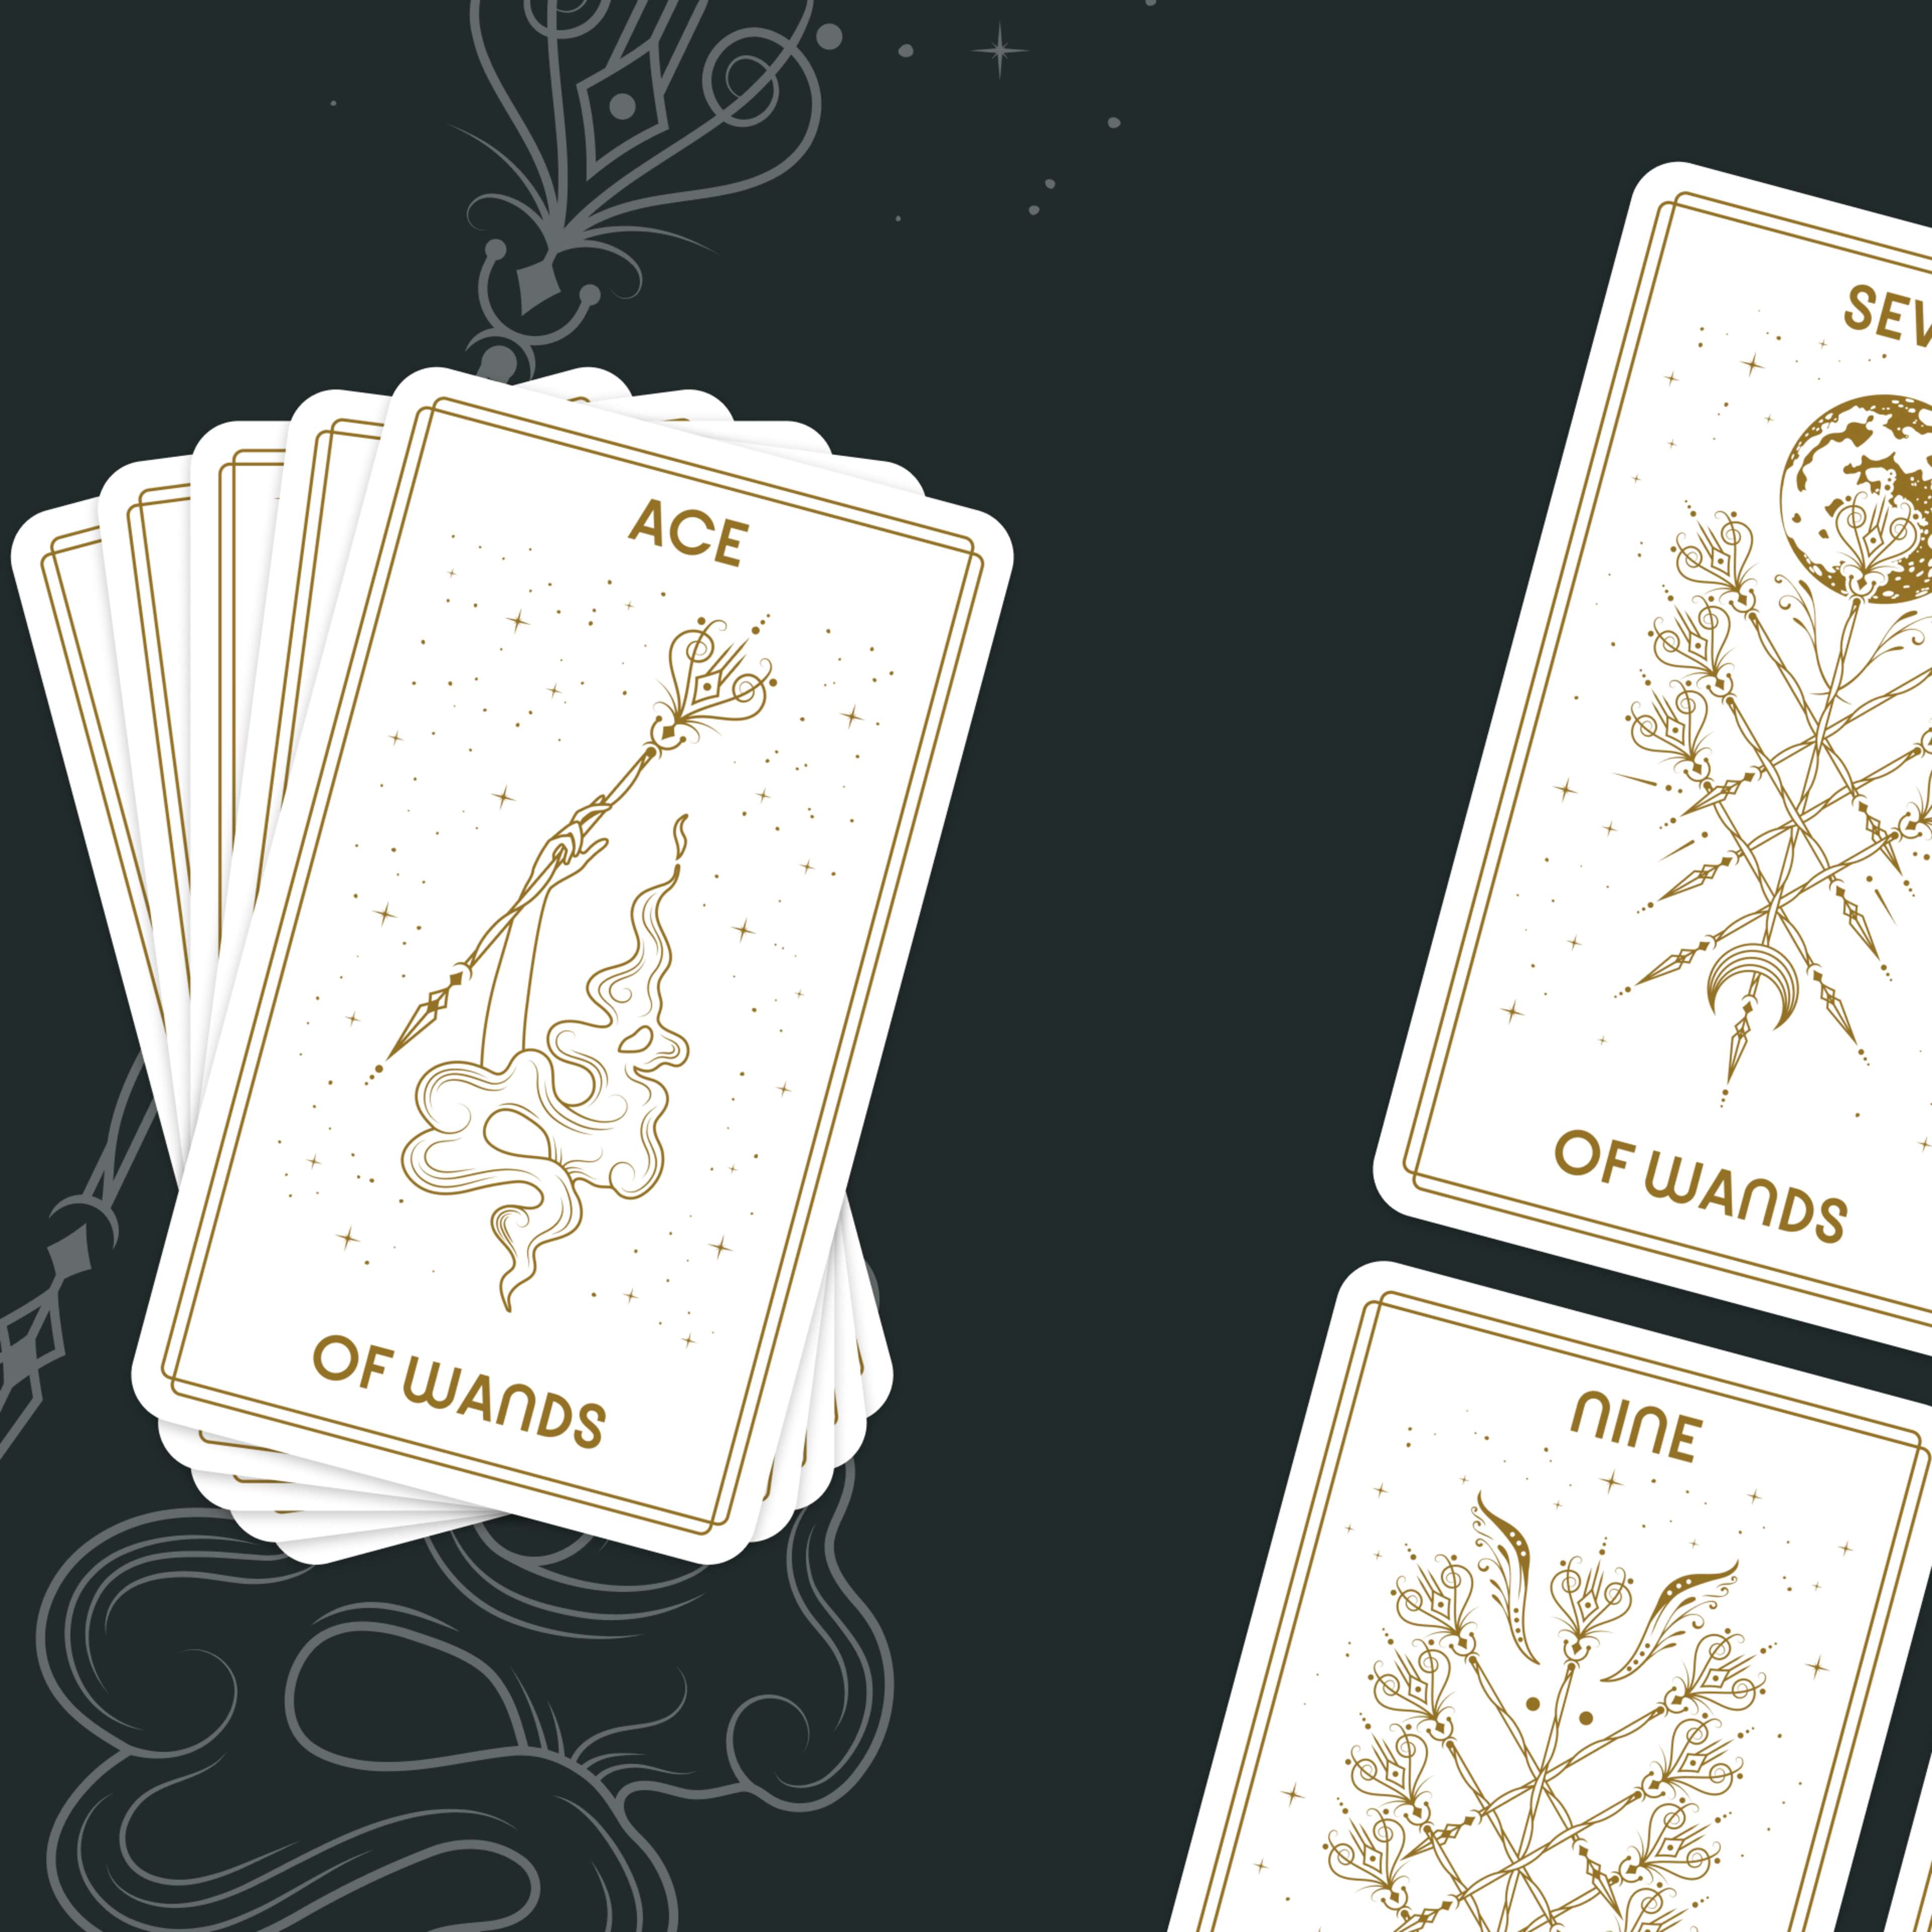 Suit of Wands Tarot Cards (Minor Arcana)